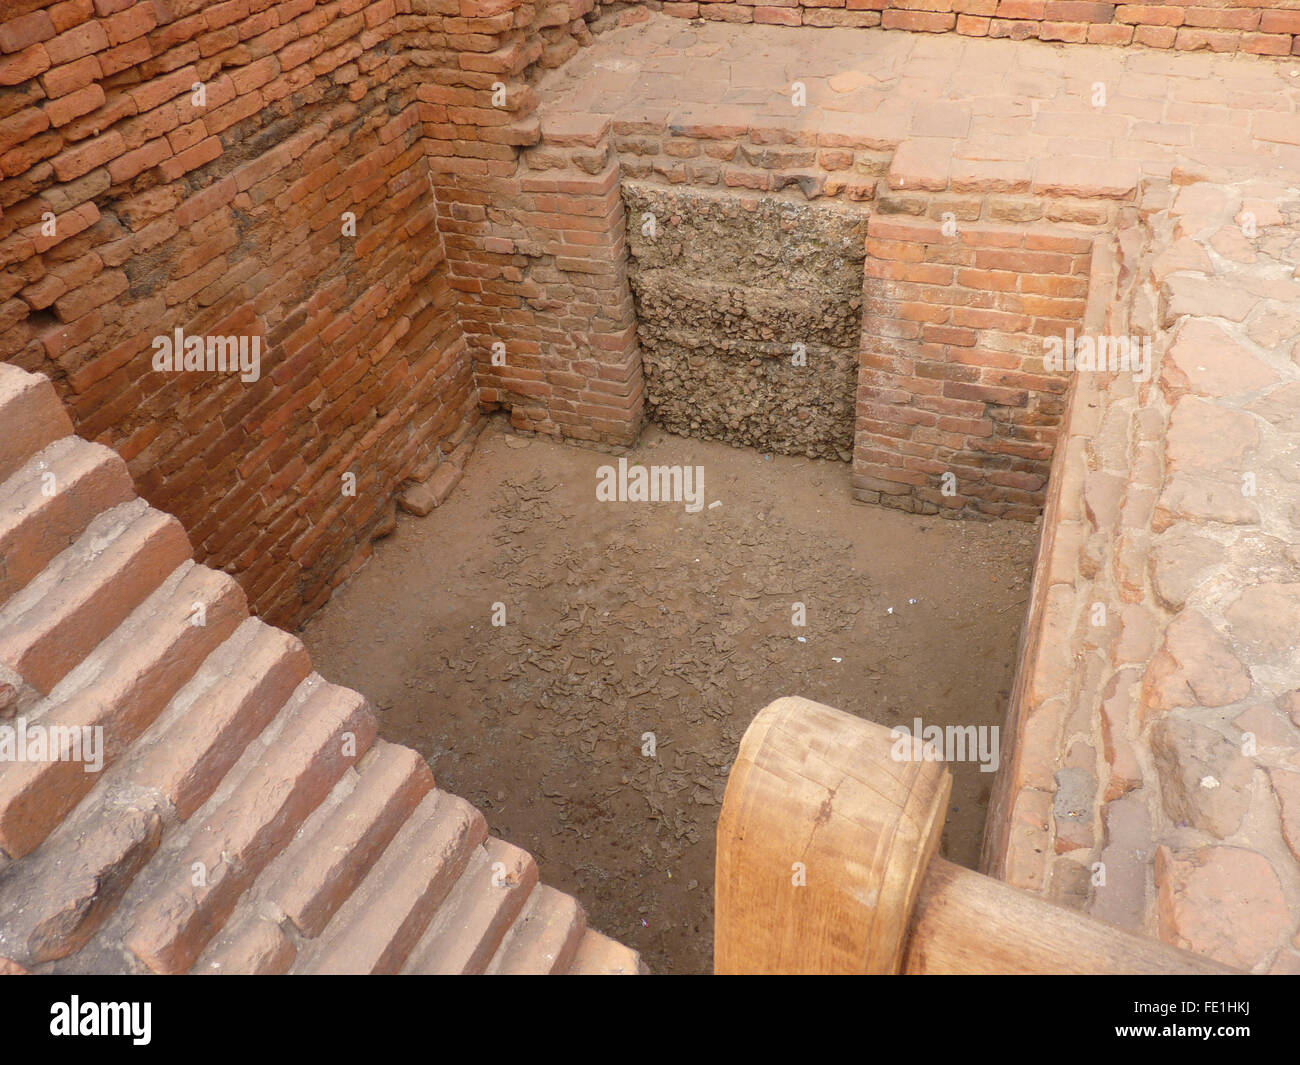 Ausgegrabenen Ruinen von Universität von Nalanda oder Nalanda Mahavihara, einem großen buddhistischen Kloster Stockfoto